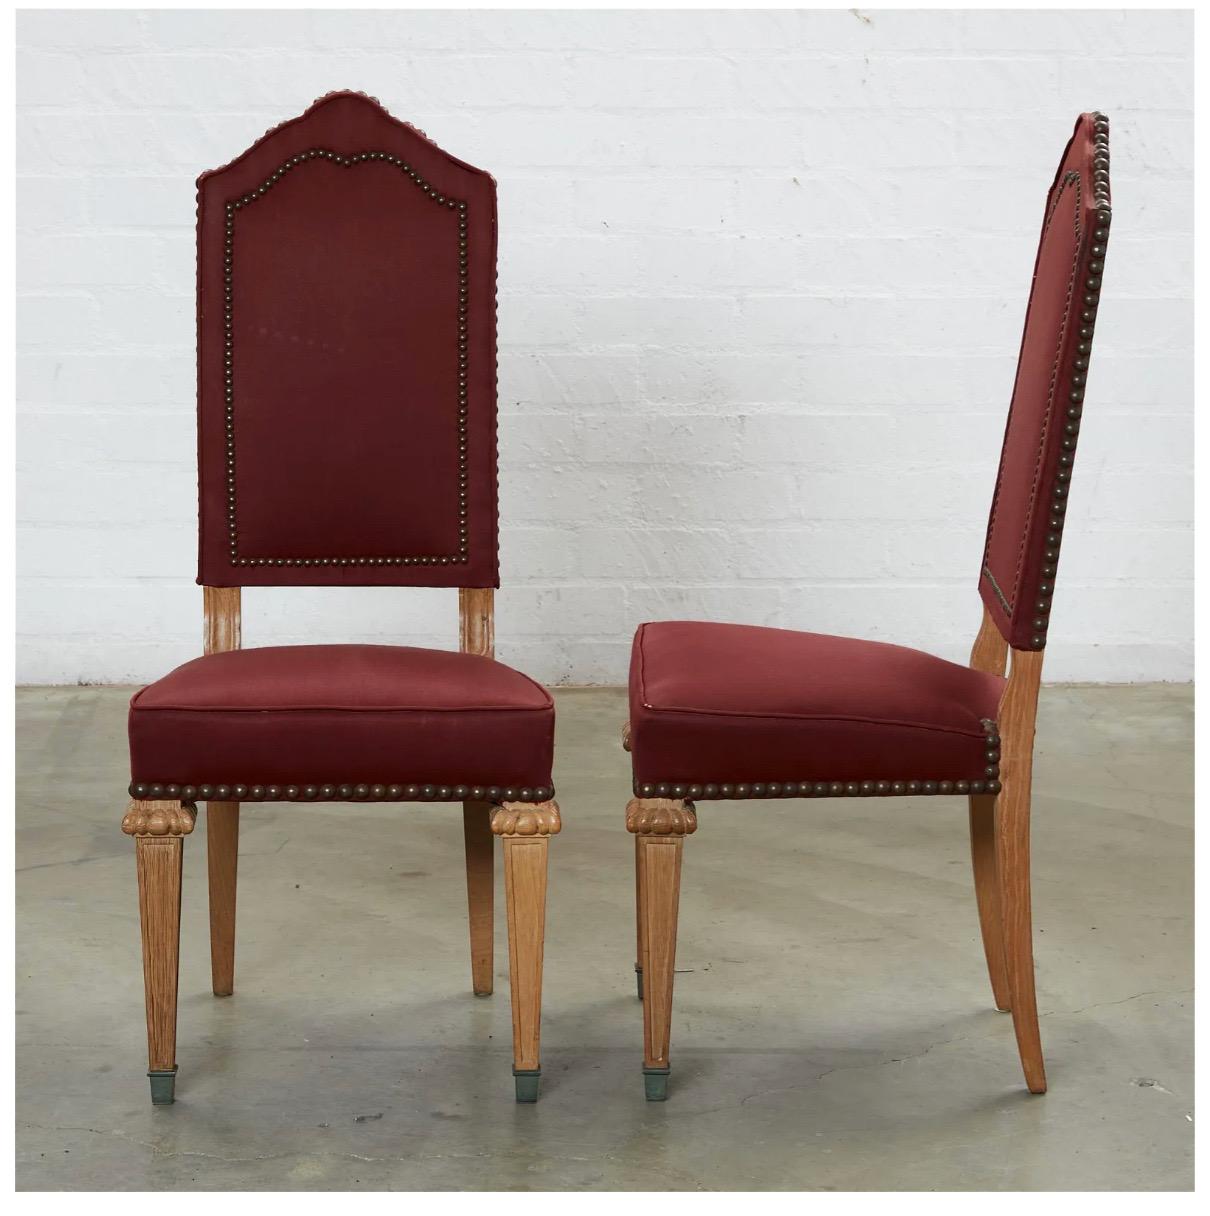 Il s'agit d'un très bel ensemble de 8 chaises de salle à manger en chêne français de style baroque datant de la seconde moitié du 20e siècle. Les 8 chaises sont en très bon état, de même que la tapisserie aux tons de vin. Le rembourrage est bien